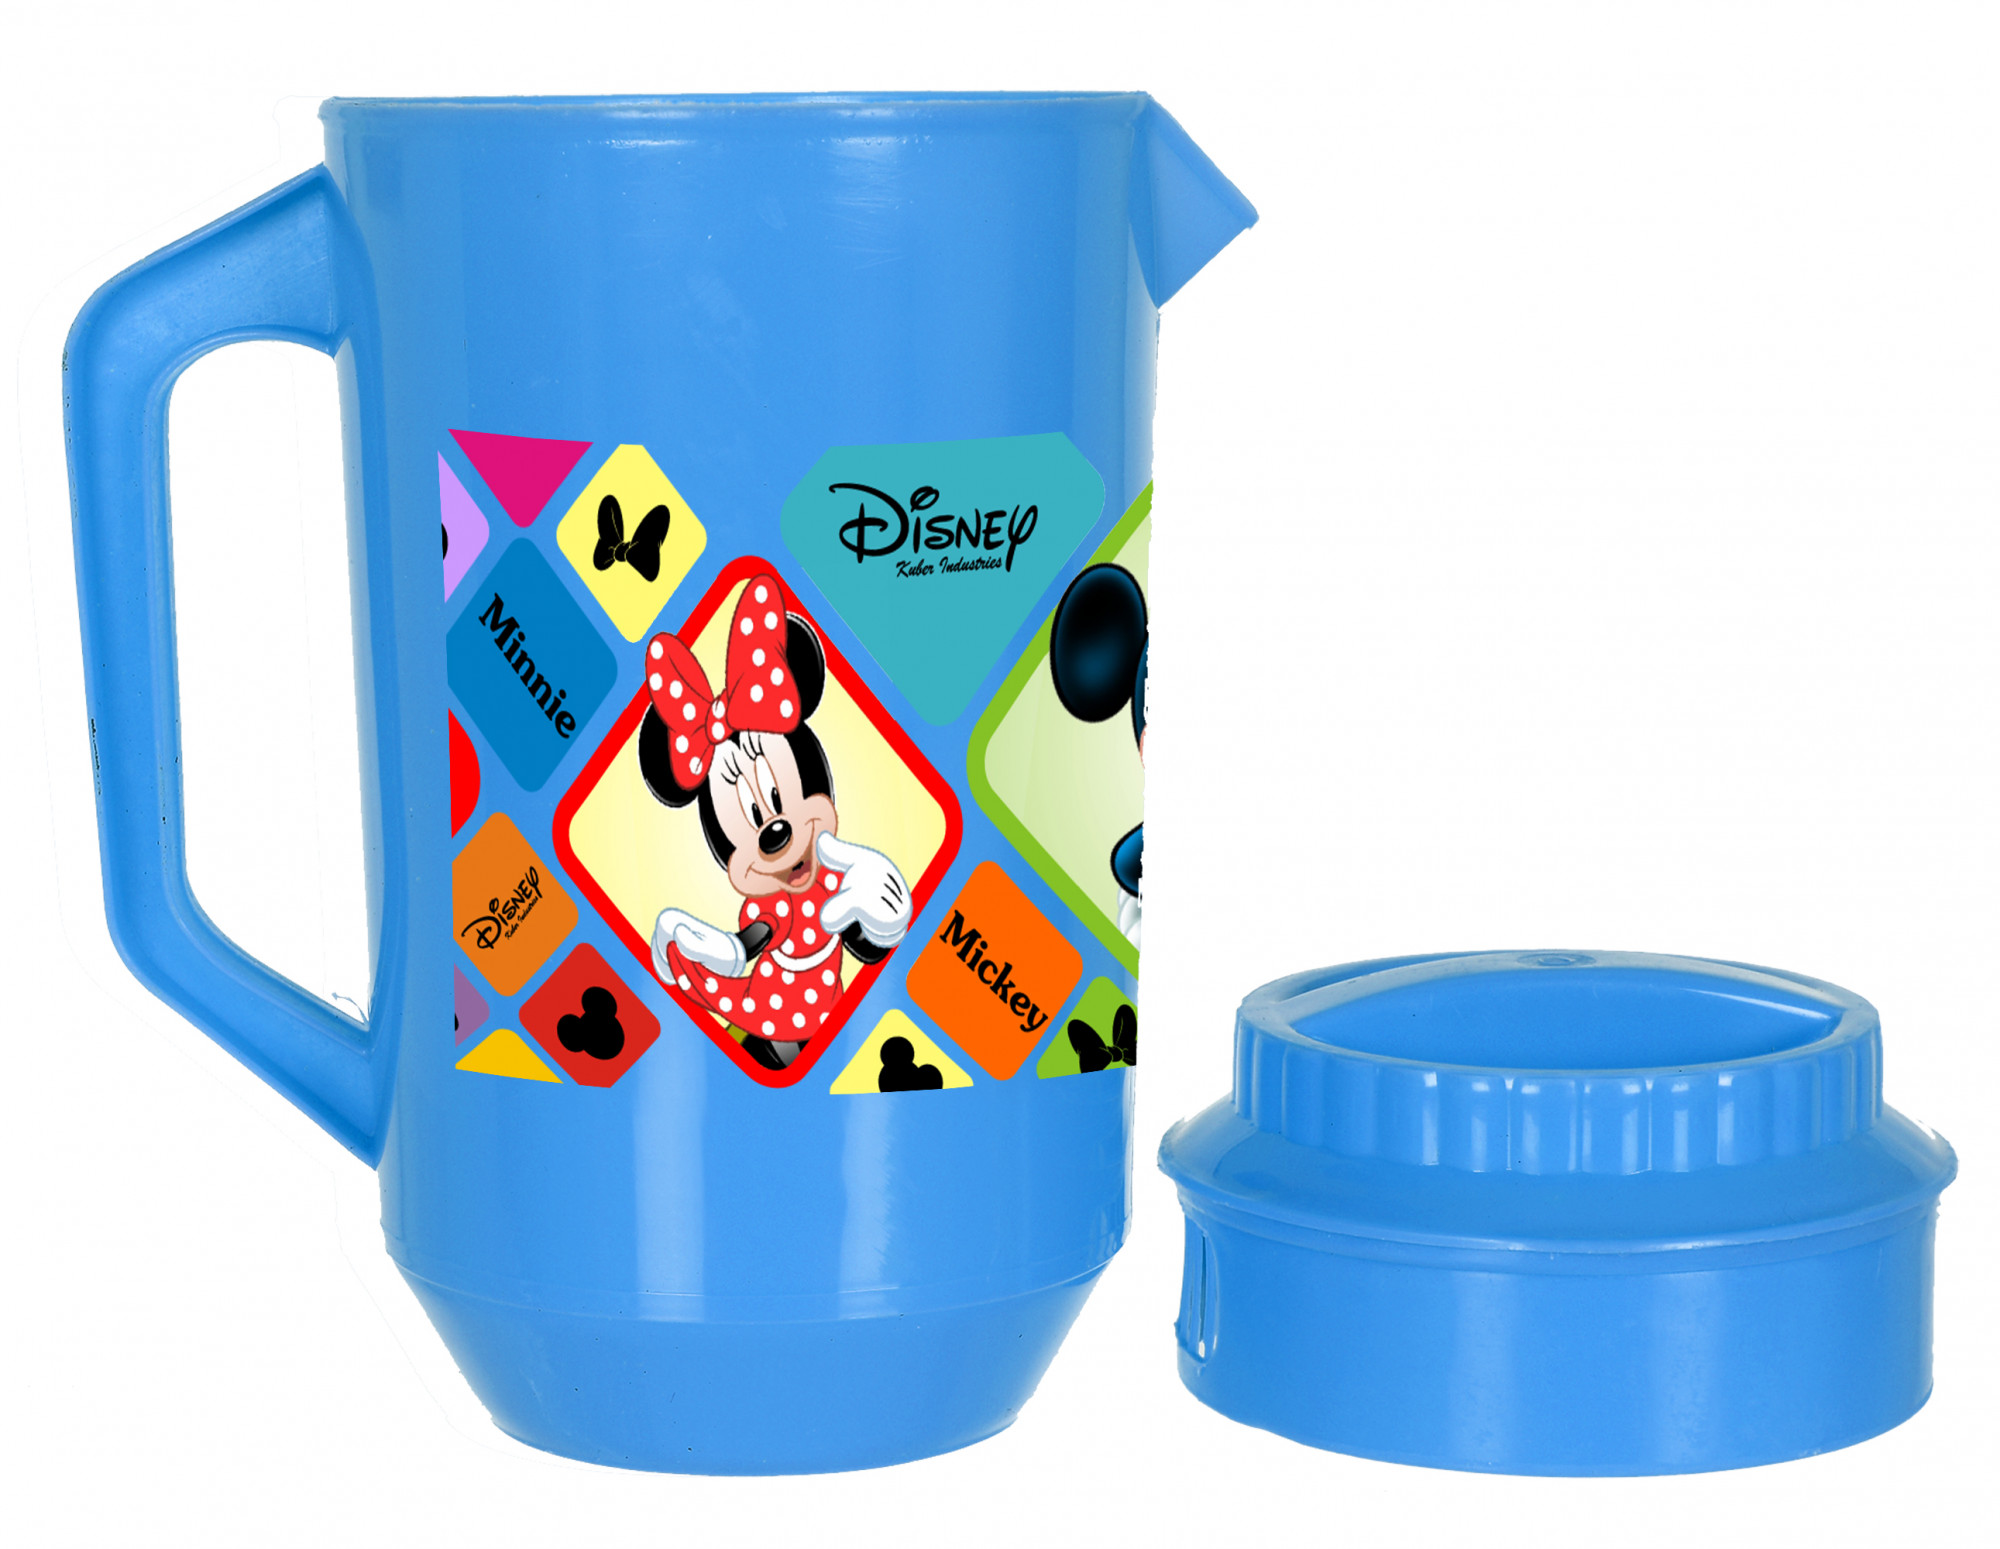 Kuber Industries Disney Mickey Minnie Print Unbreakable Multipurpose Plastic Water & Juice Jug With Lid,2 Ltr (Blue)